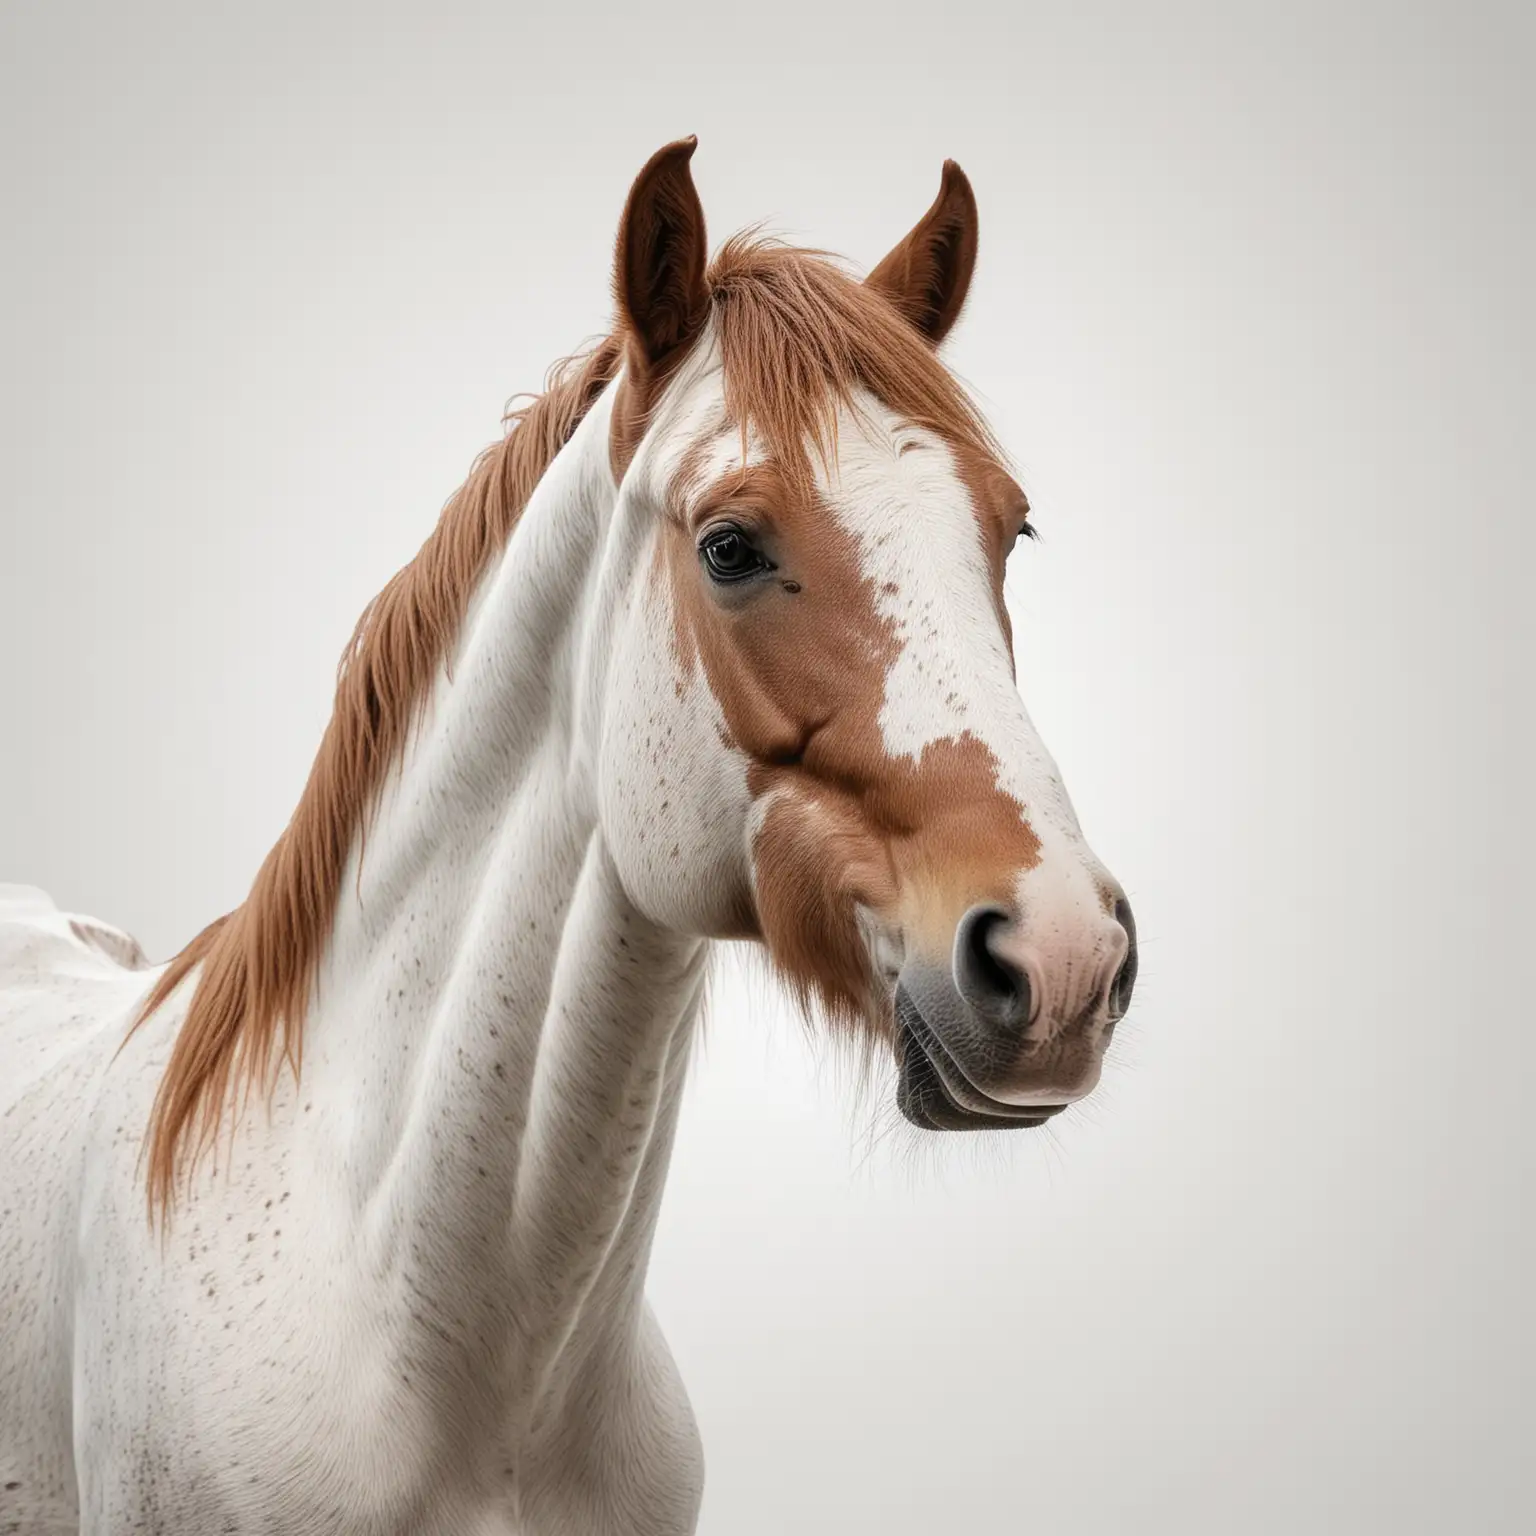 Un caballo viendo hacia arriba con un fondo blanco